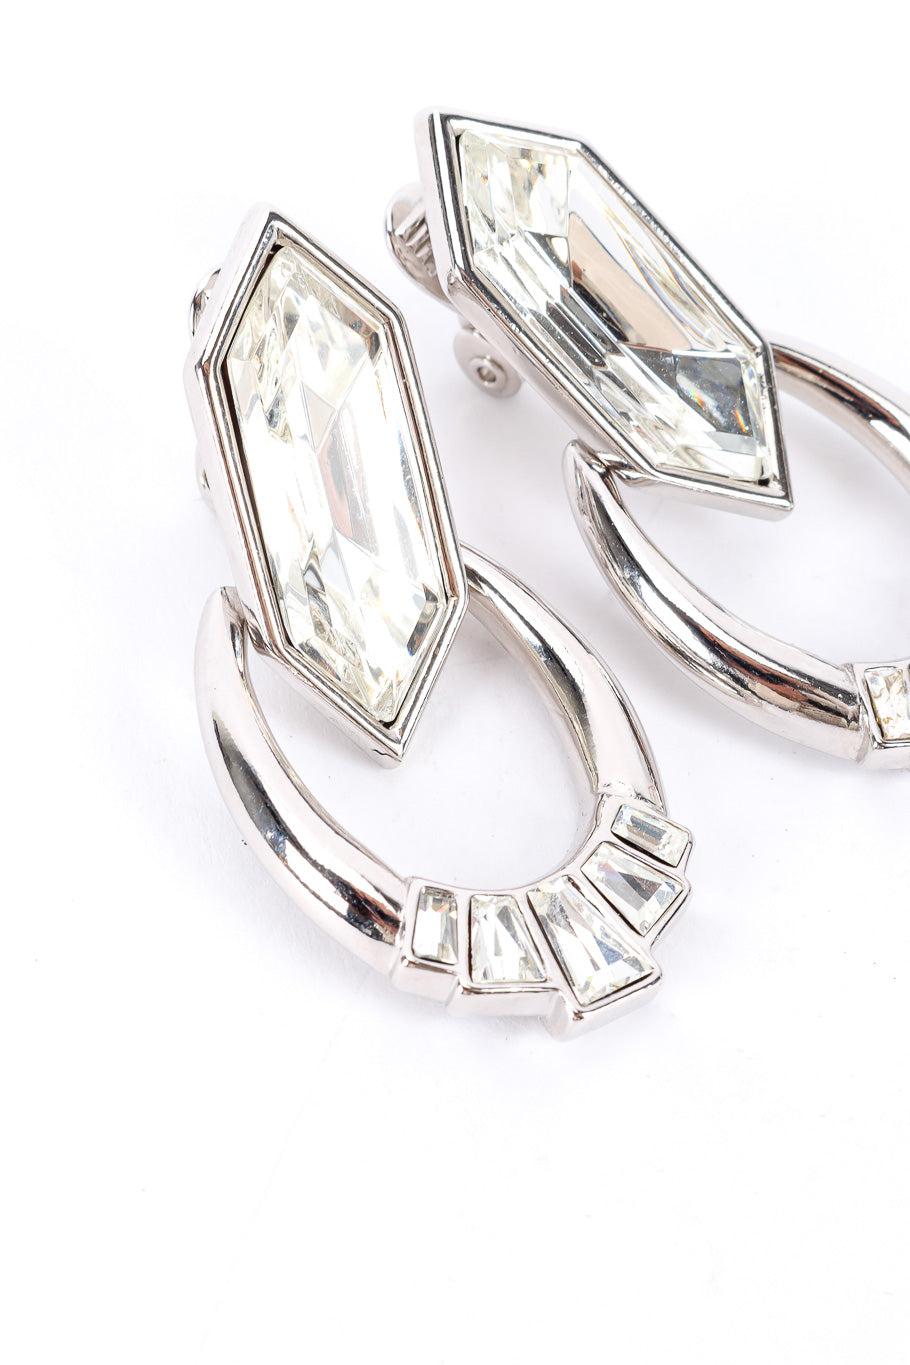 Vintage Yves Saint Laurent Crystal Rhinestone Drop Earrings front closeup @Recessla